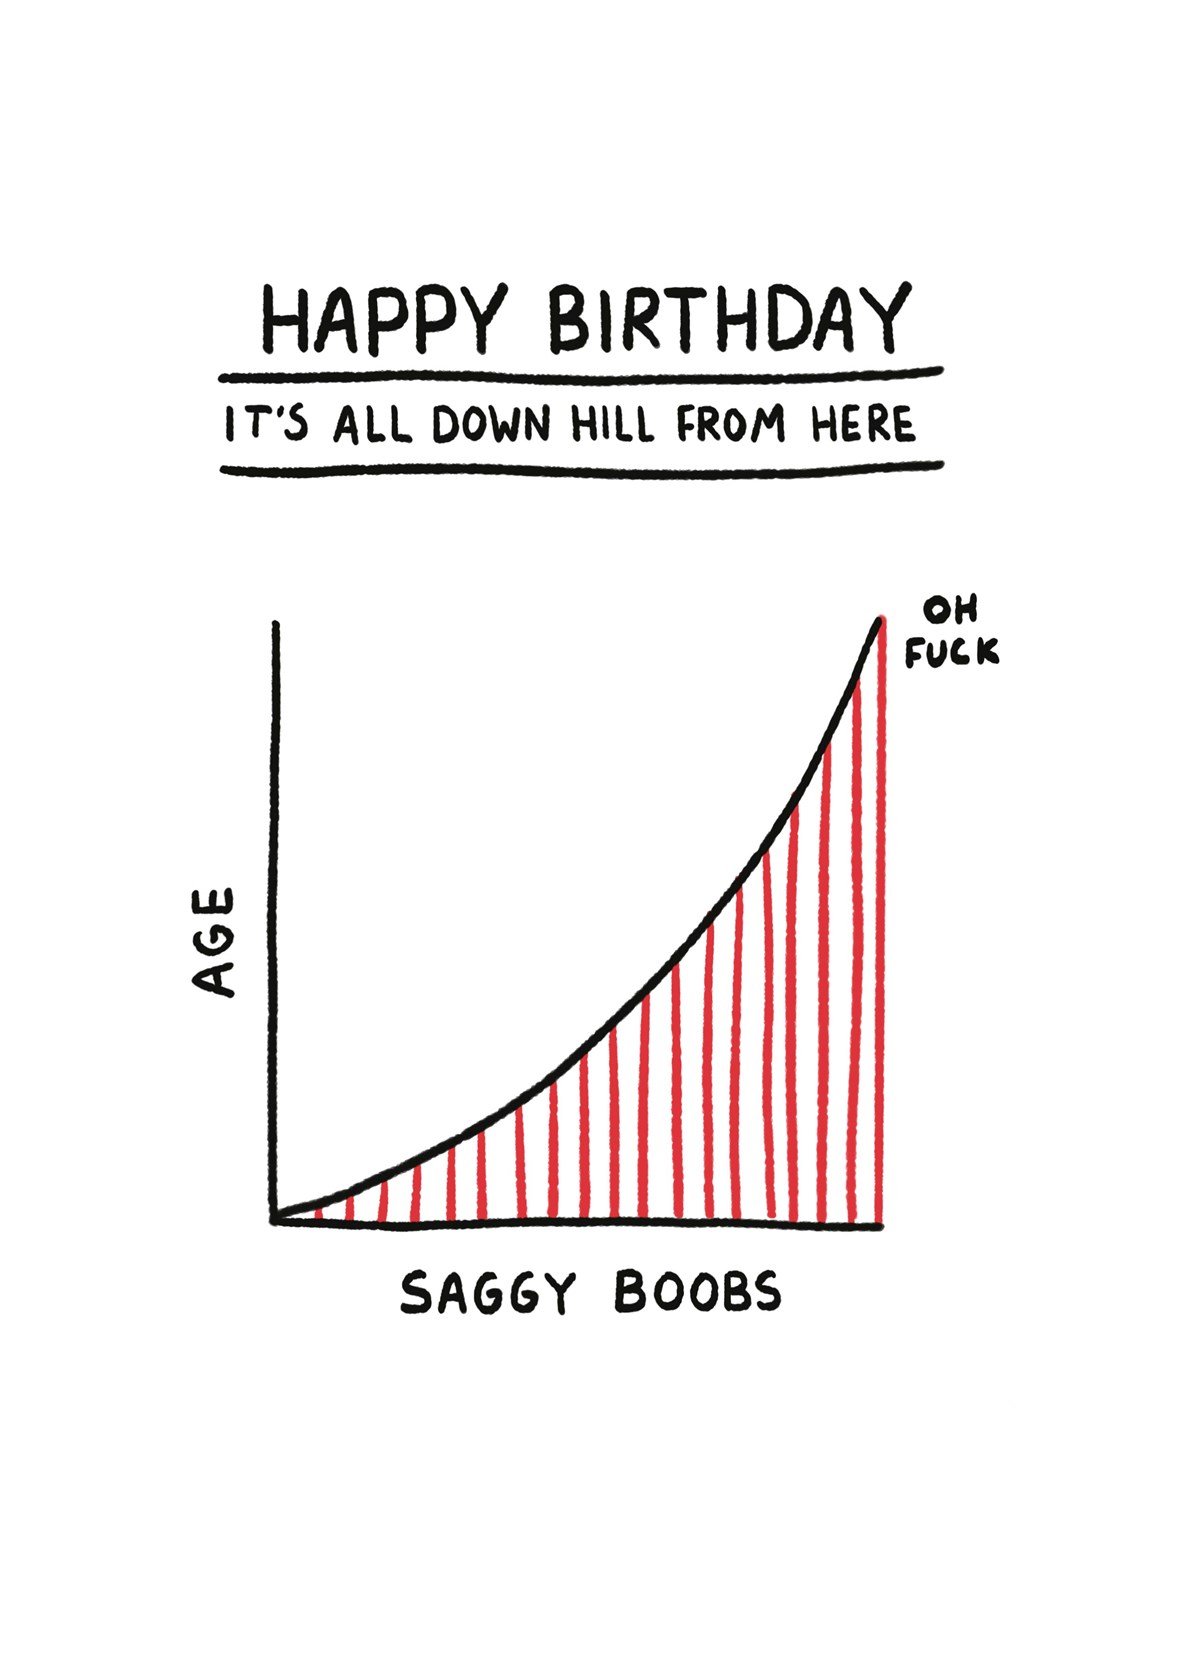 Saggy Boobs Birthday Card